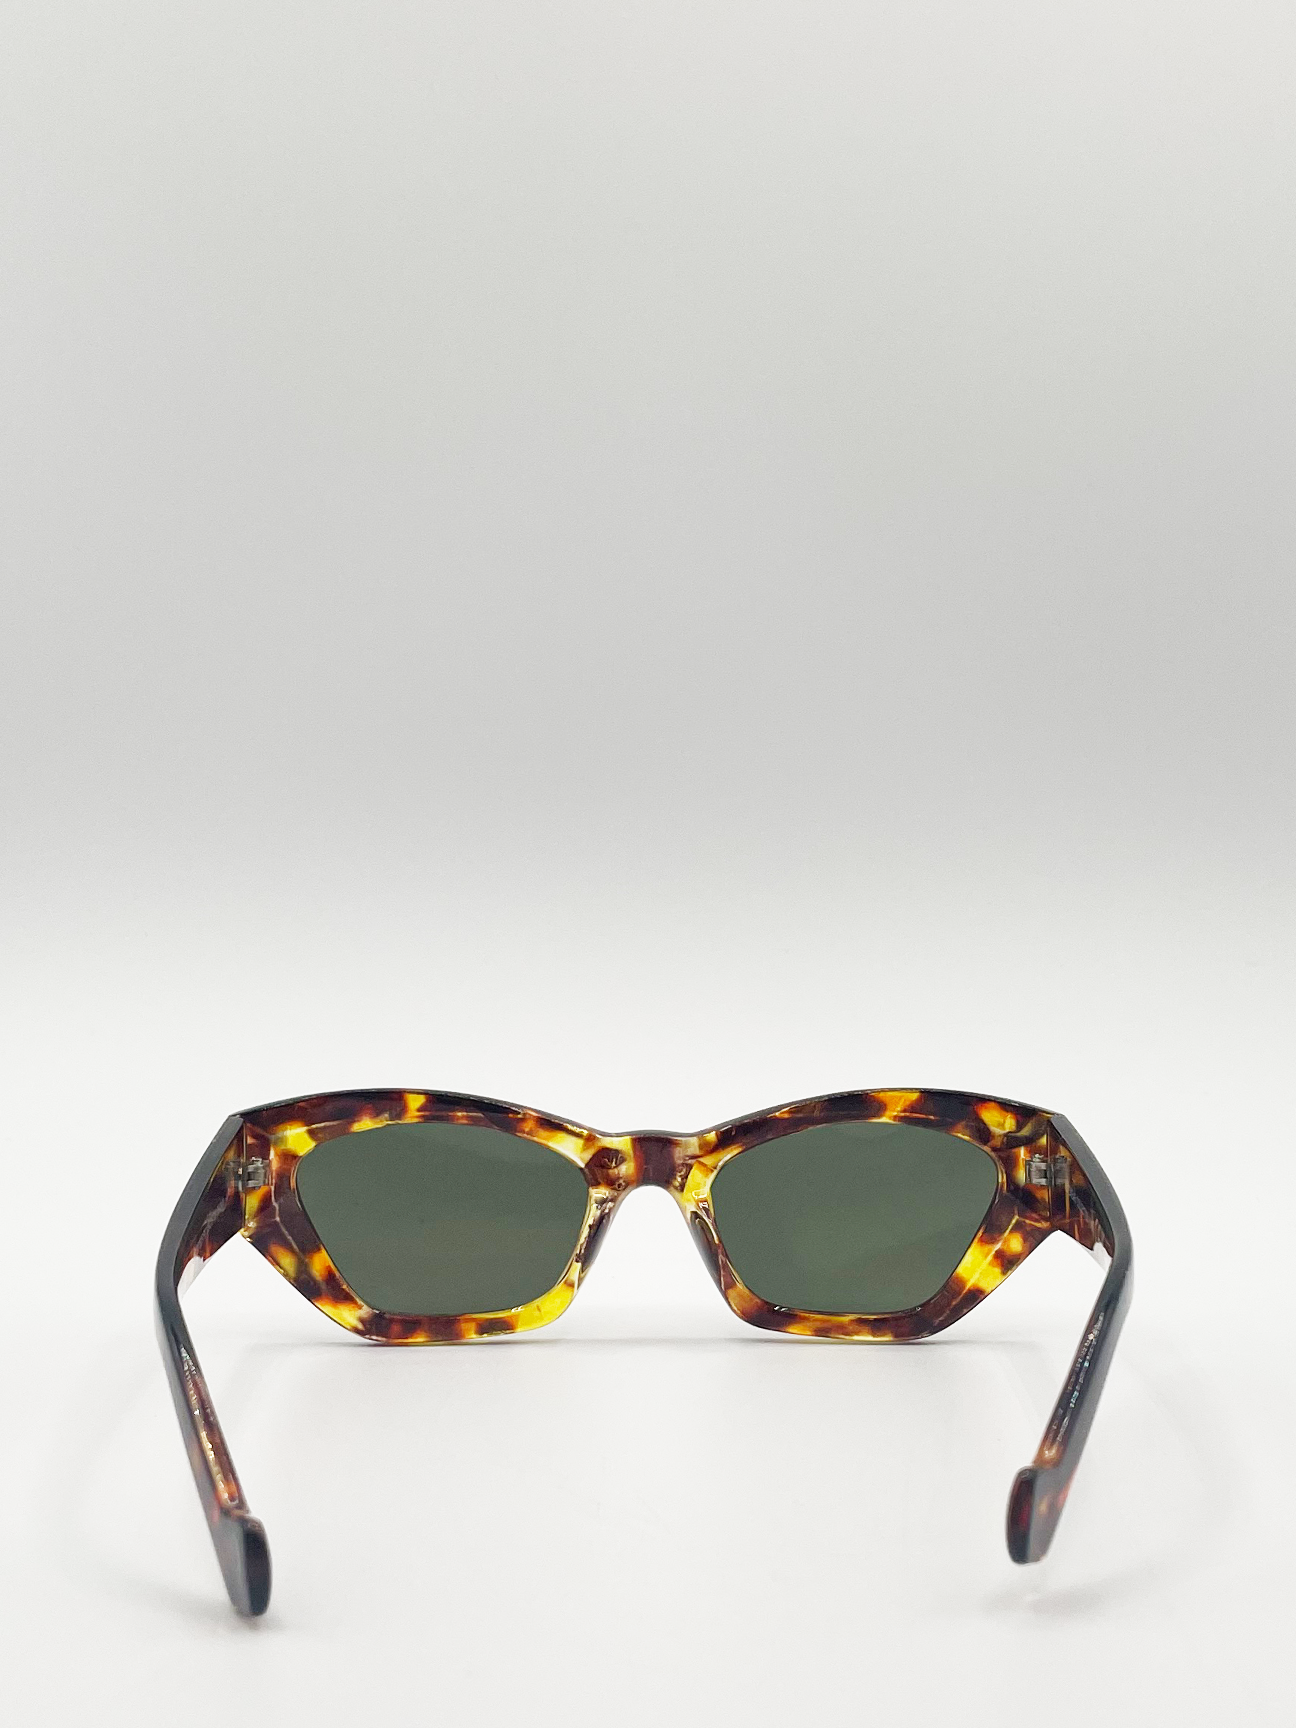 Tortoiseshell Angular Cat Eye Sunglasses with Black Lenses